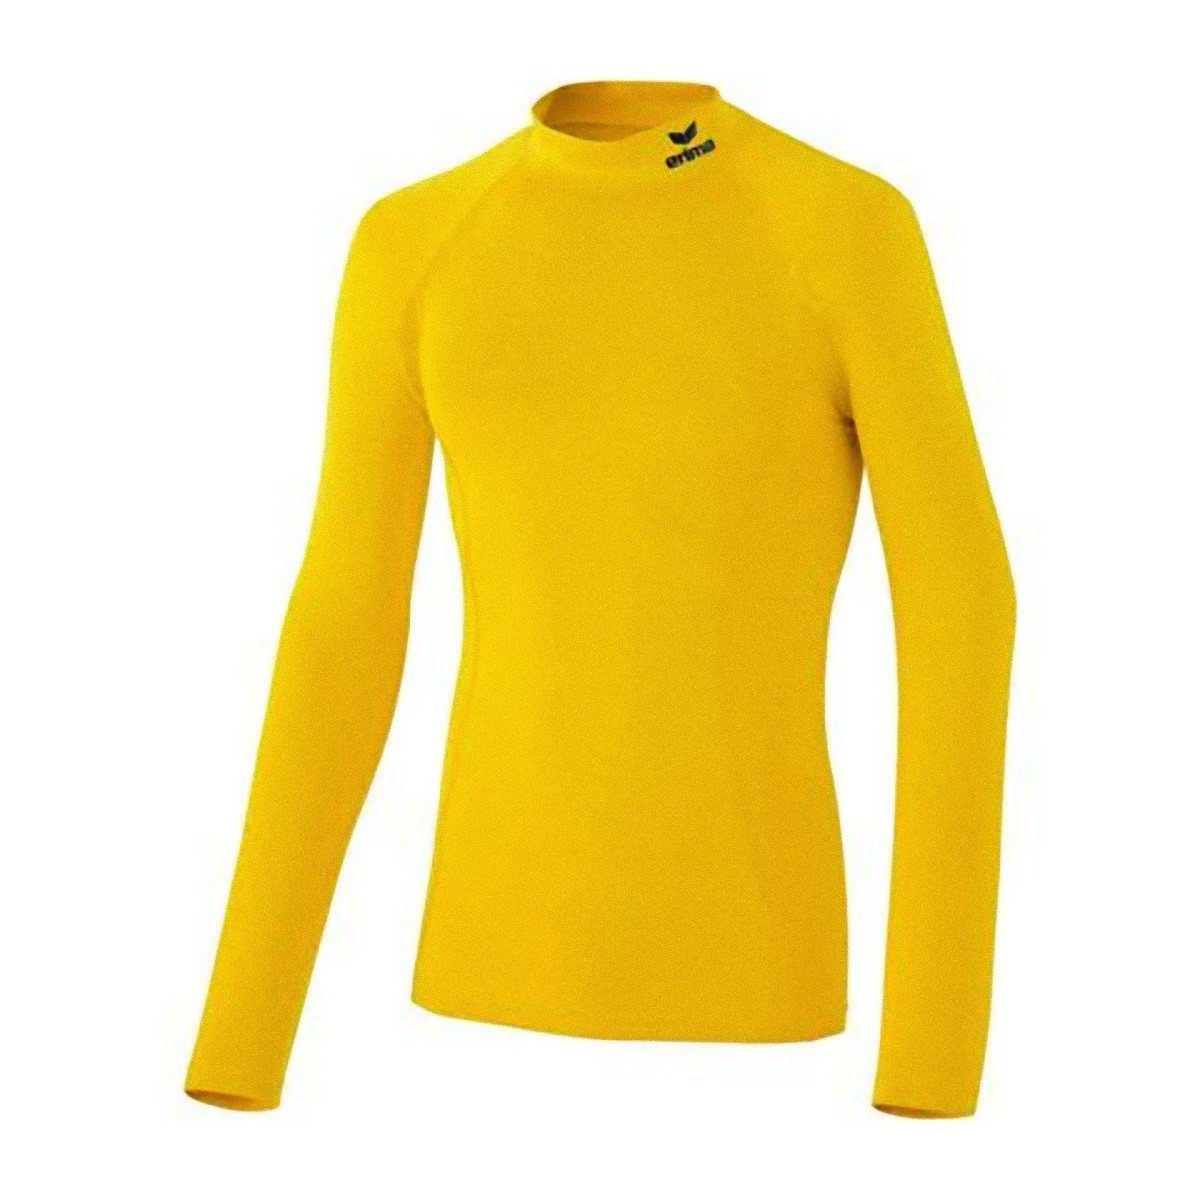 Erima Laufshirt Support Langarm Pullover Shirt Gelb Sportshirt Longsleeve Fussball Funktionsshirt